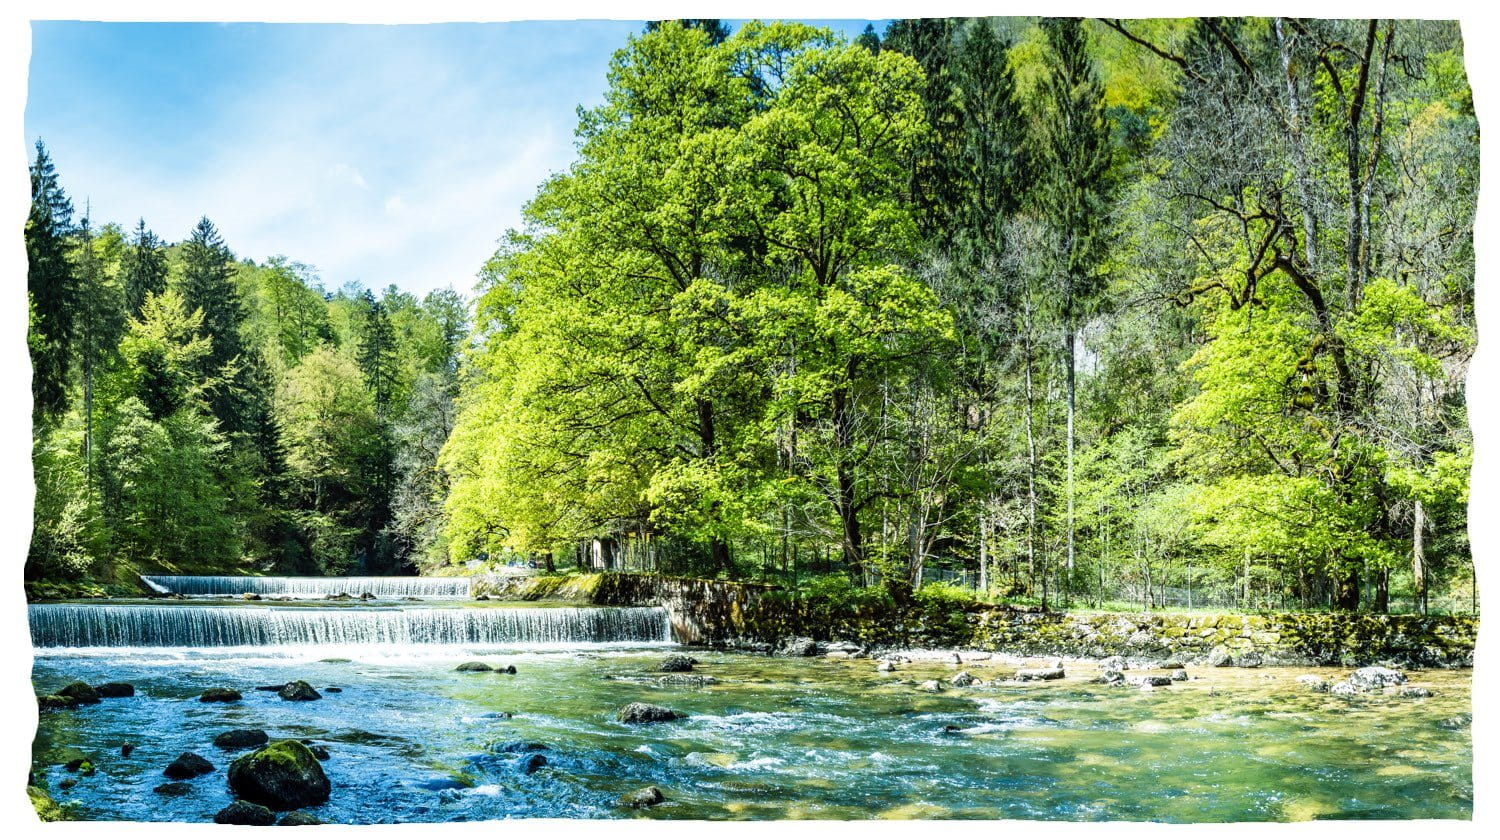 Een schone rivier met een kleine waterval die door een bos stroomt.